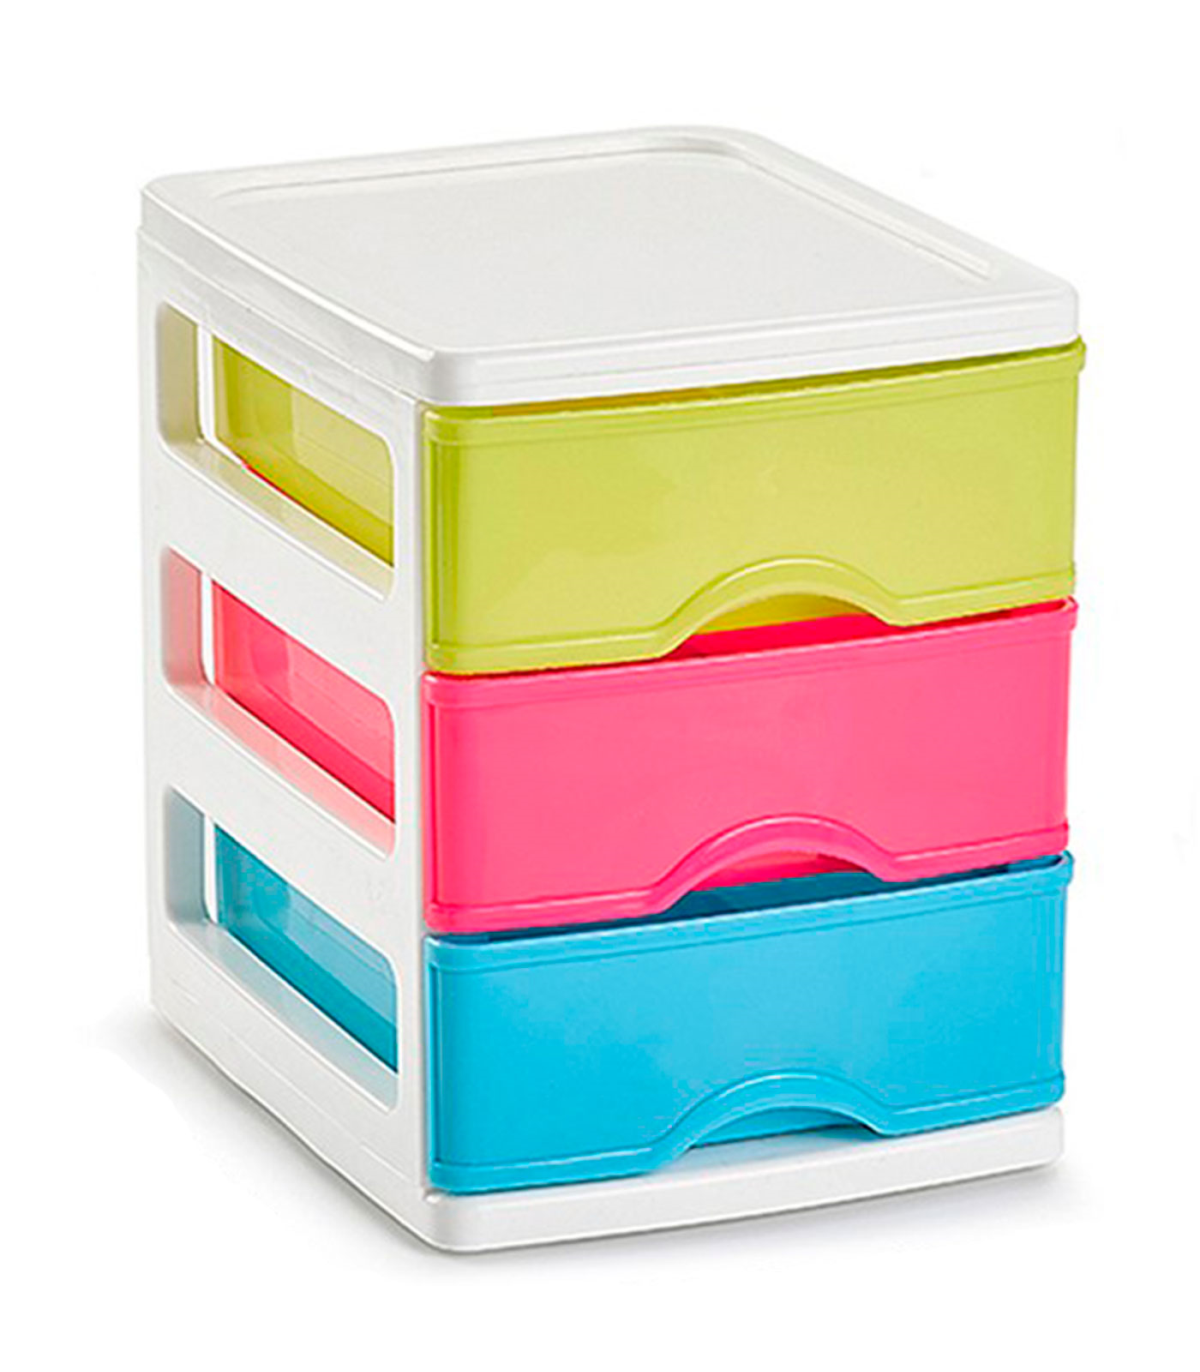 Tradineur - Cajonera Turia de plástico con 3 cajones multicolor, torre  almacenaje, sobremesa, escritorio, baño, oficina (Blanco